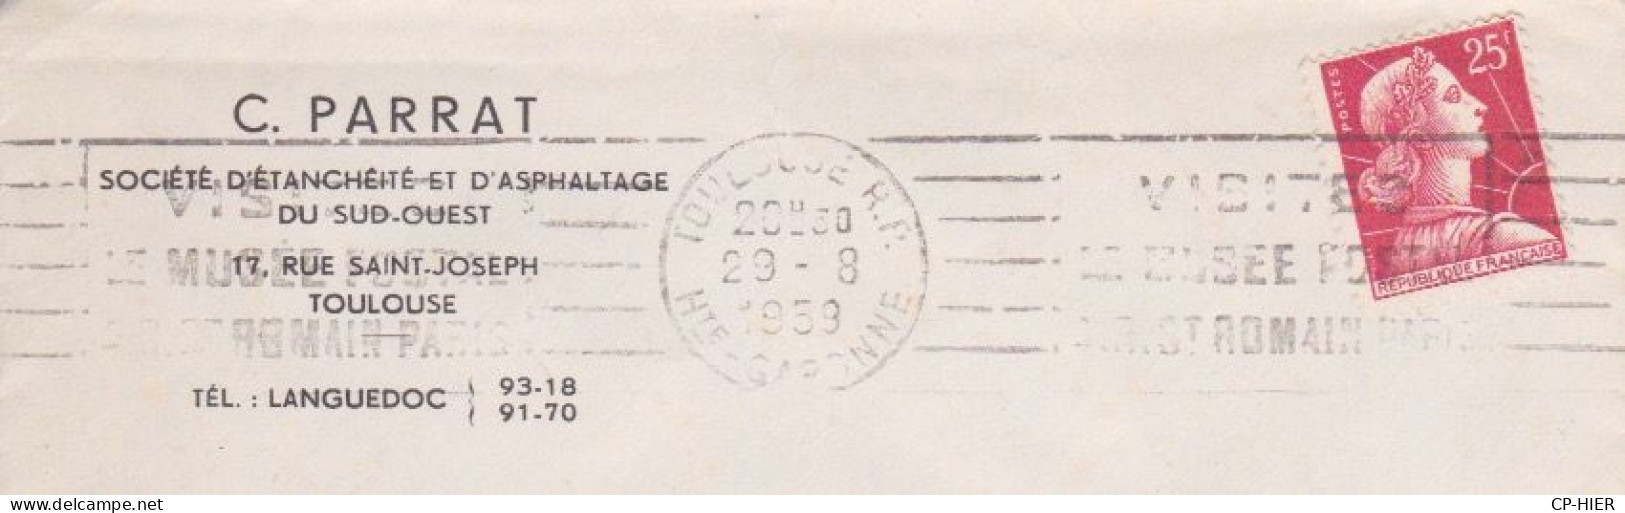 FRANCE - FLAMME TOULOUSE R.P  1959 - VISITES LE MUSEE POSTAL - ENTETE C. PARRAT SOCIETE D'ASPHALTAGE DU SUD OUEST - Mechanical Postmarks (Advertisement)